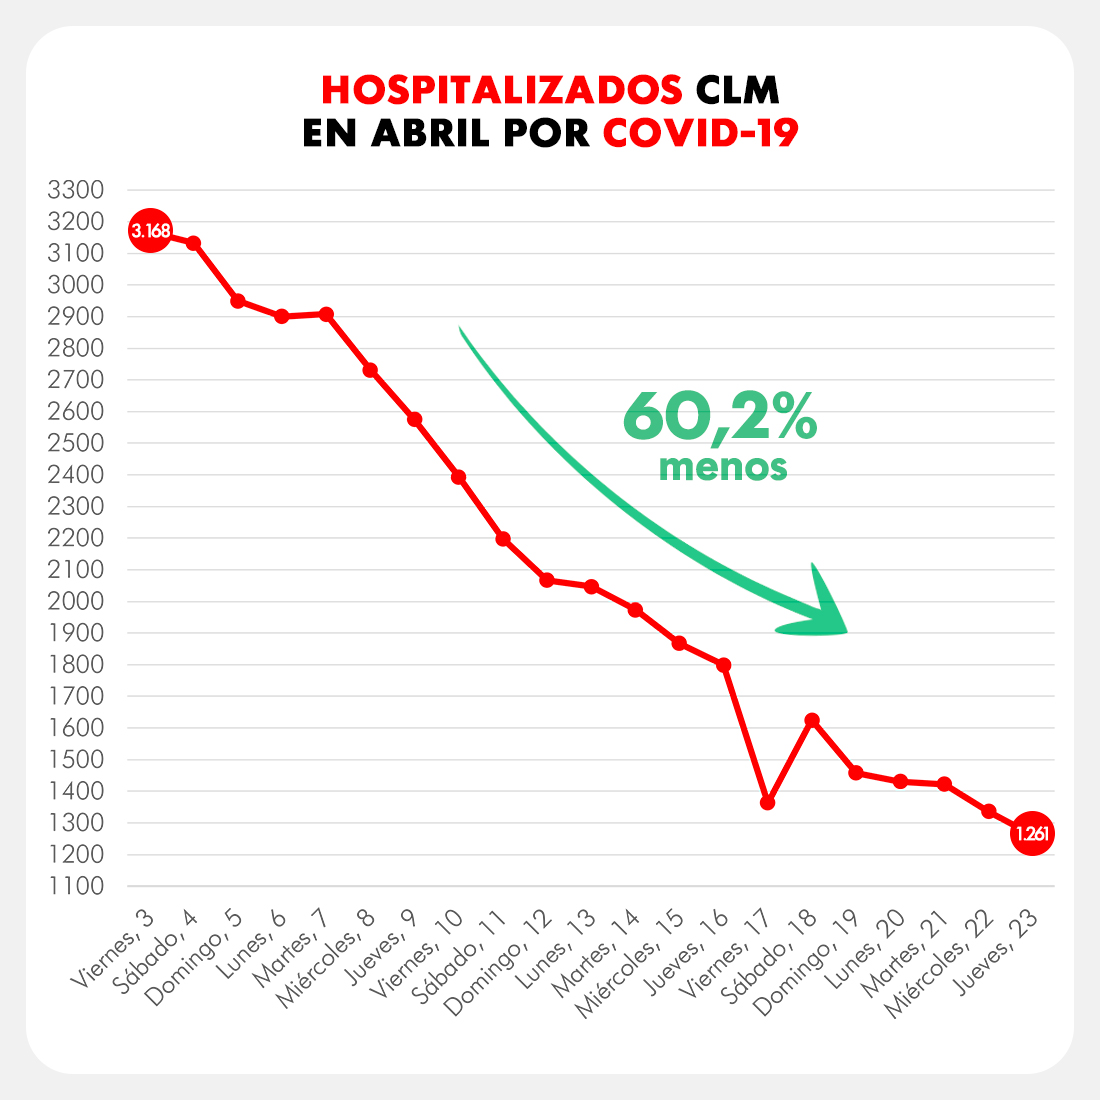 Abengózar destaca que CLM es una de regiones más transparentes al informar sobre el coronavirus y pide a Núñez que “deje de mentir”